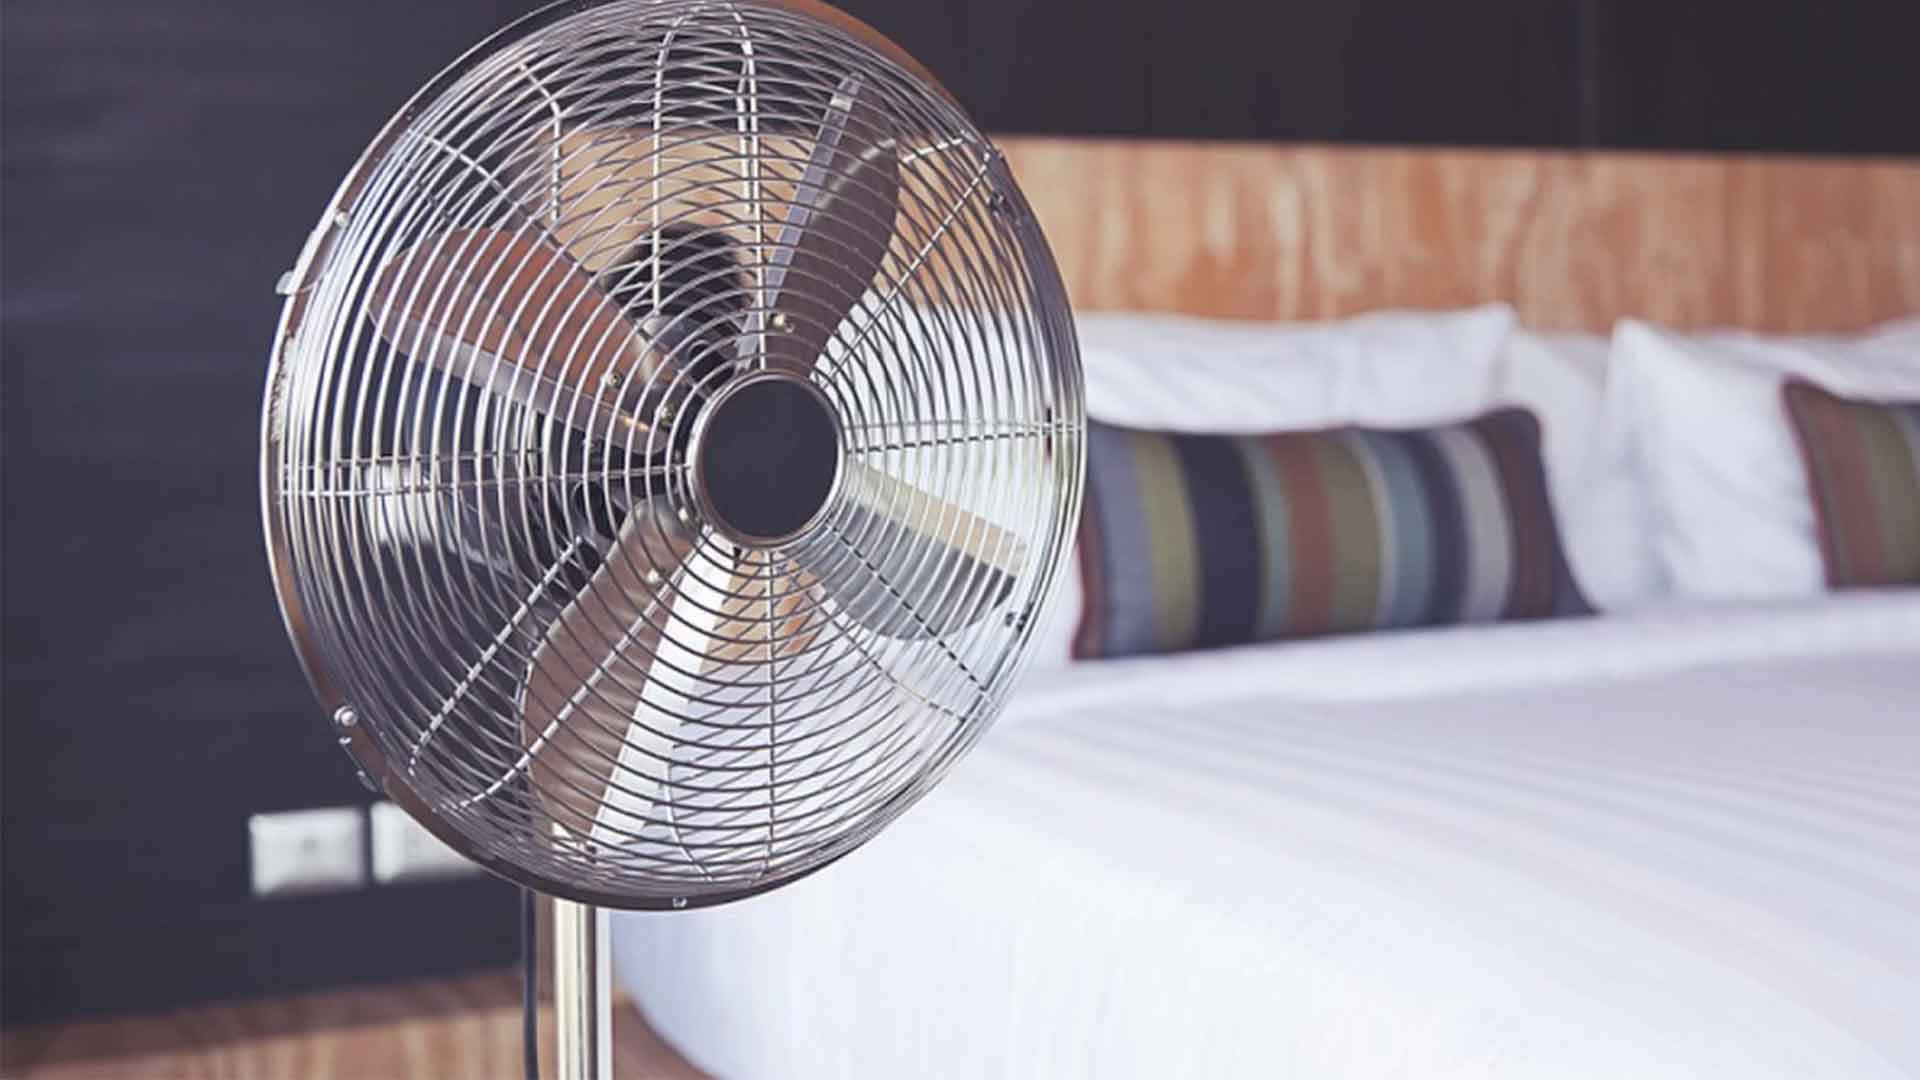 Dormir con el ventilador encendido: una mala idea